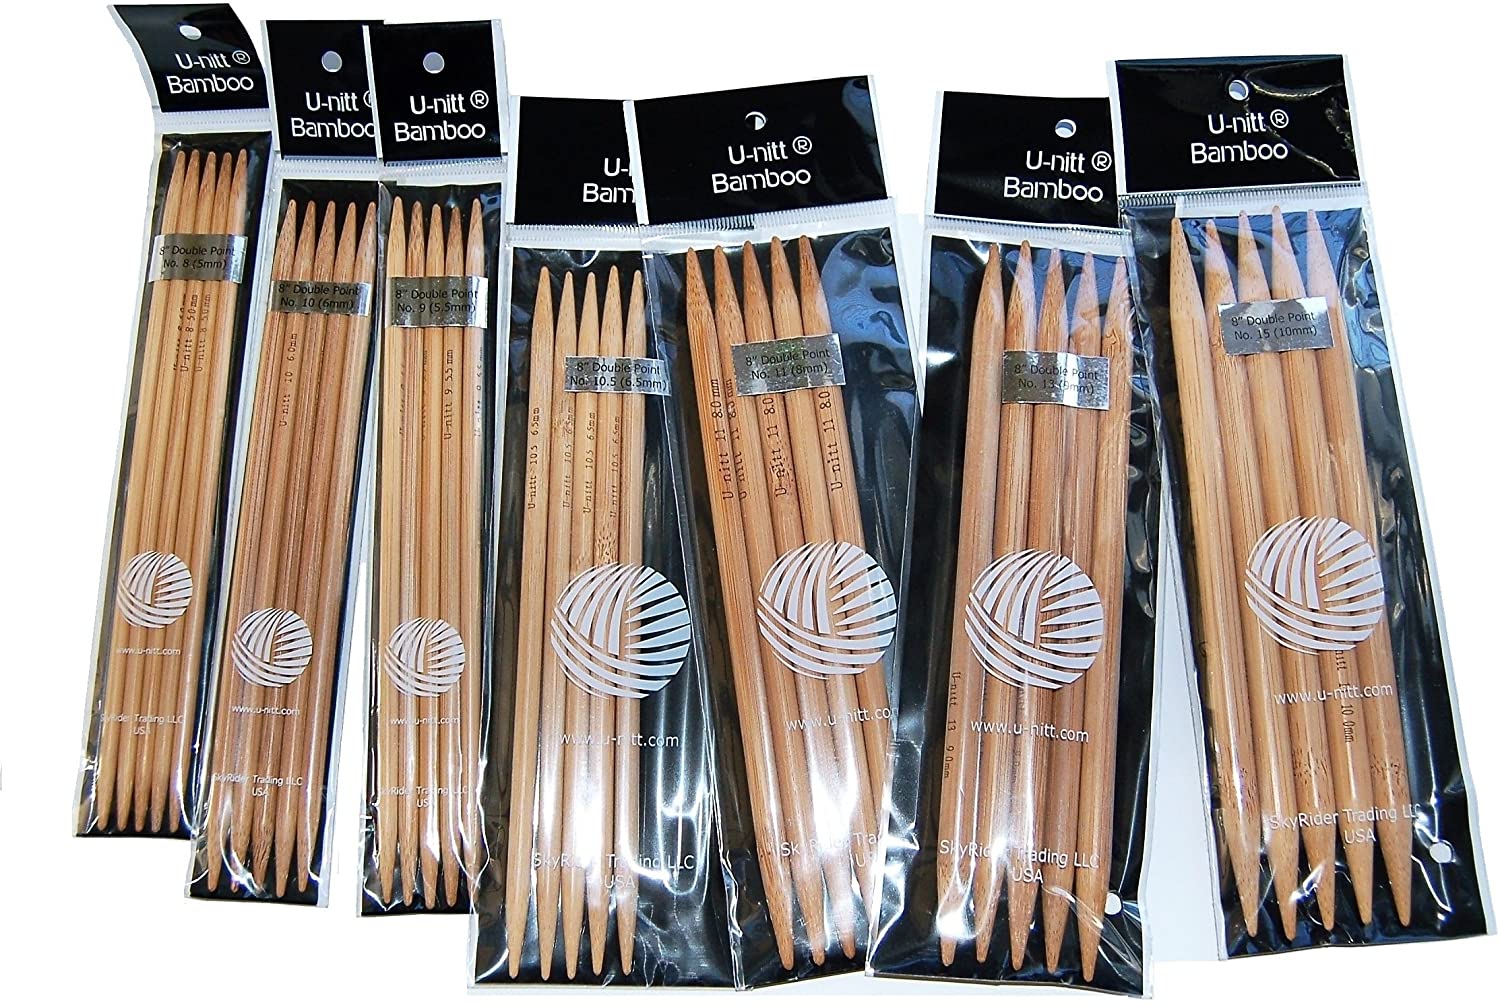 U-nitt Bamboo Knitting Needles